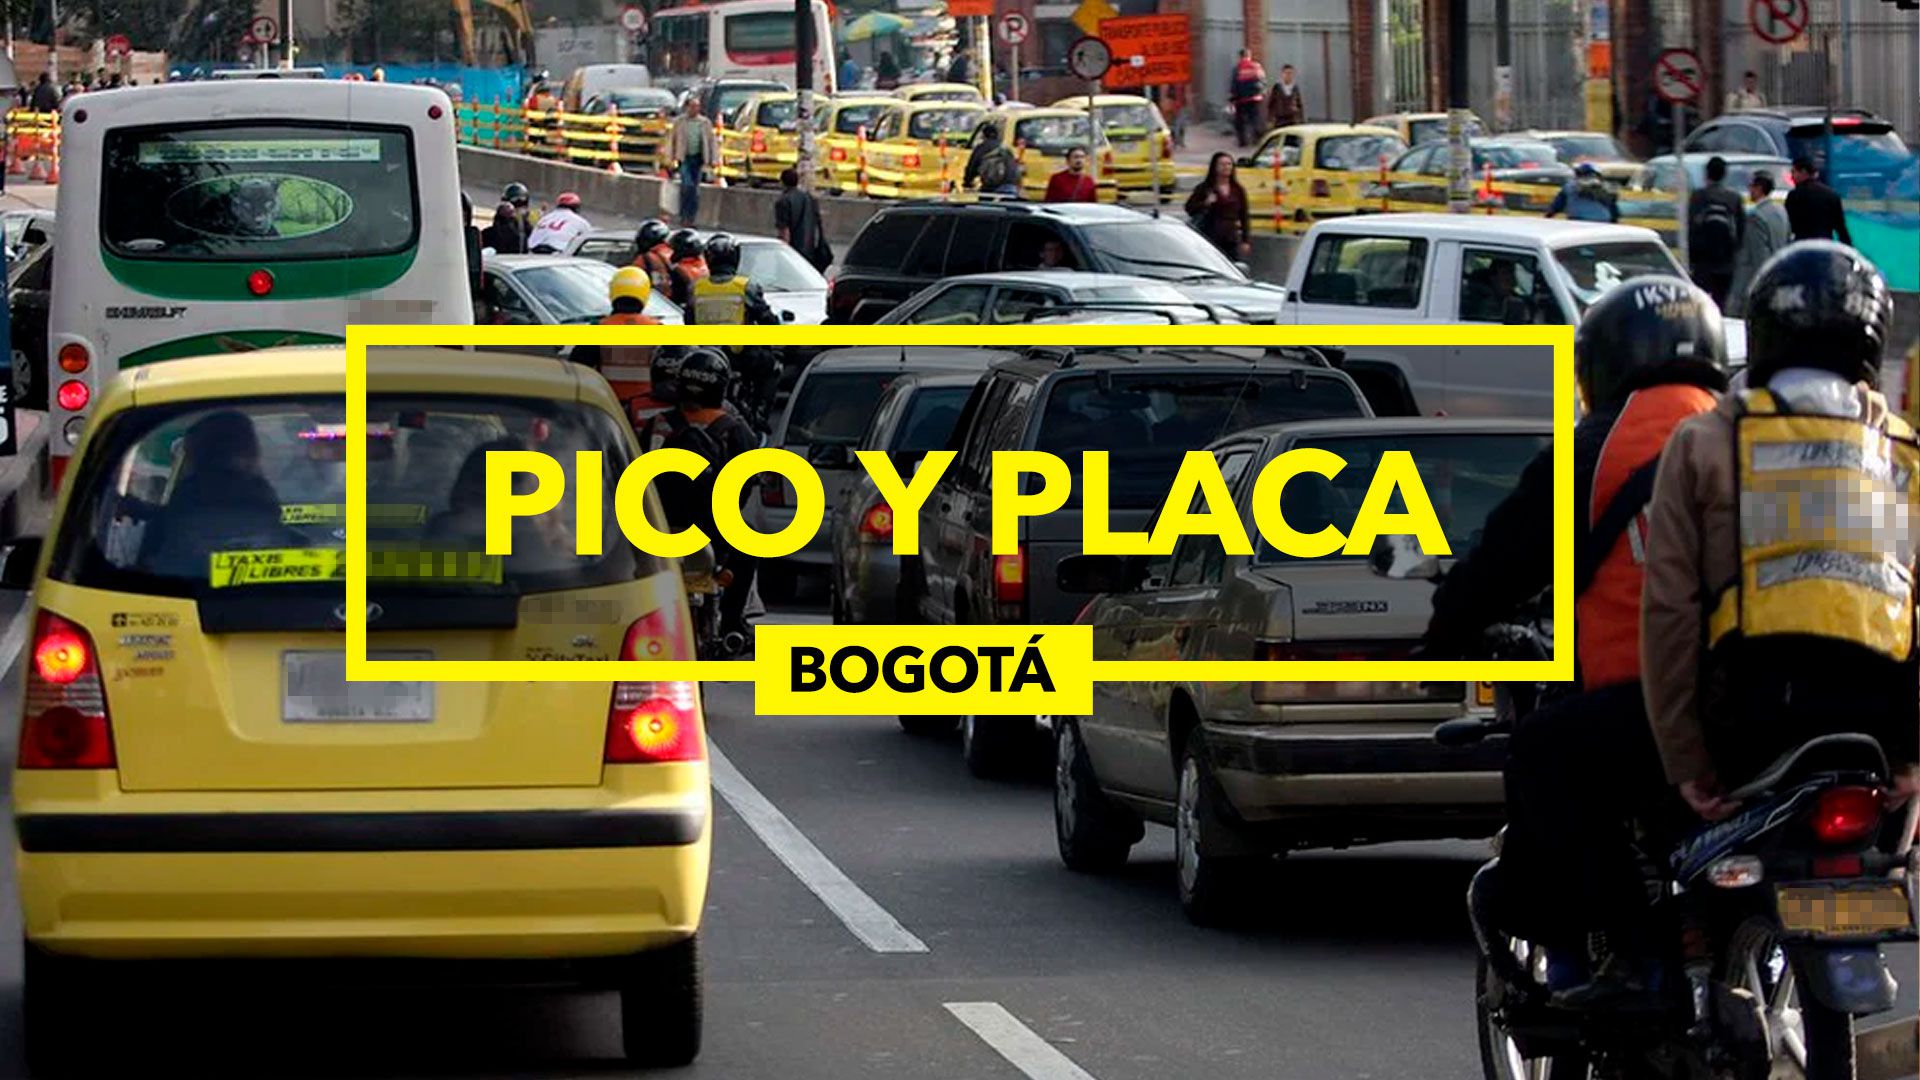 El Pico y Placa aplica de lunes a sábado (Infobae/Jovani Pérez)